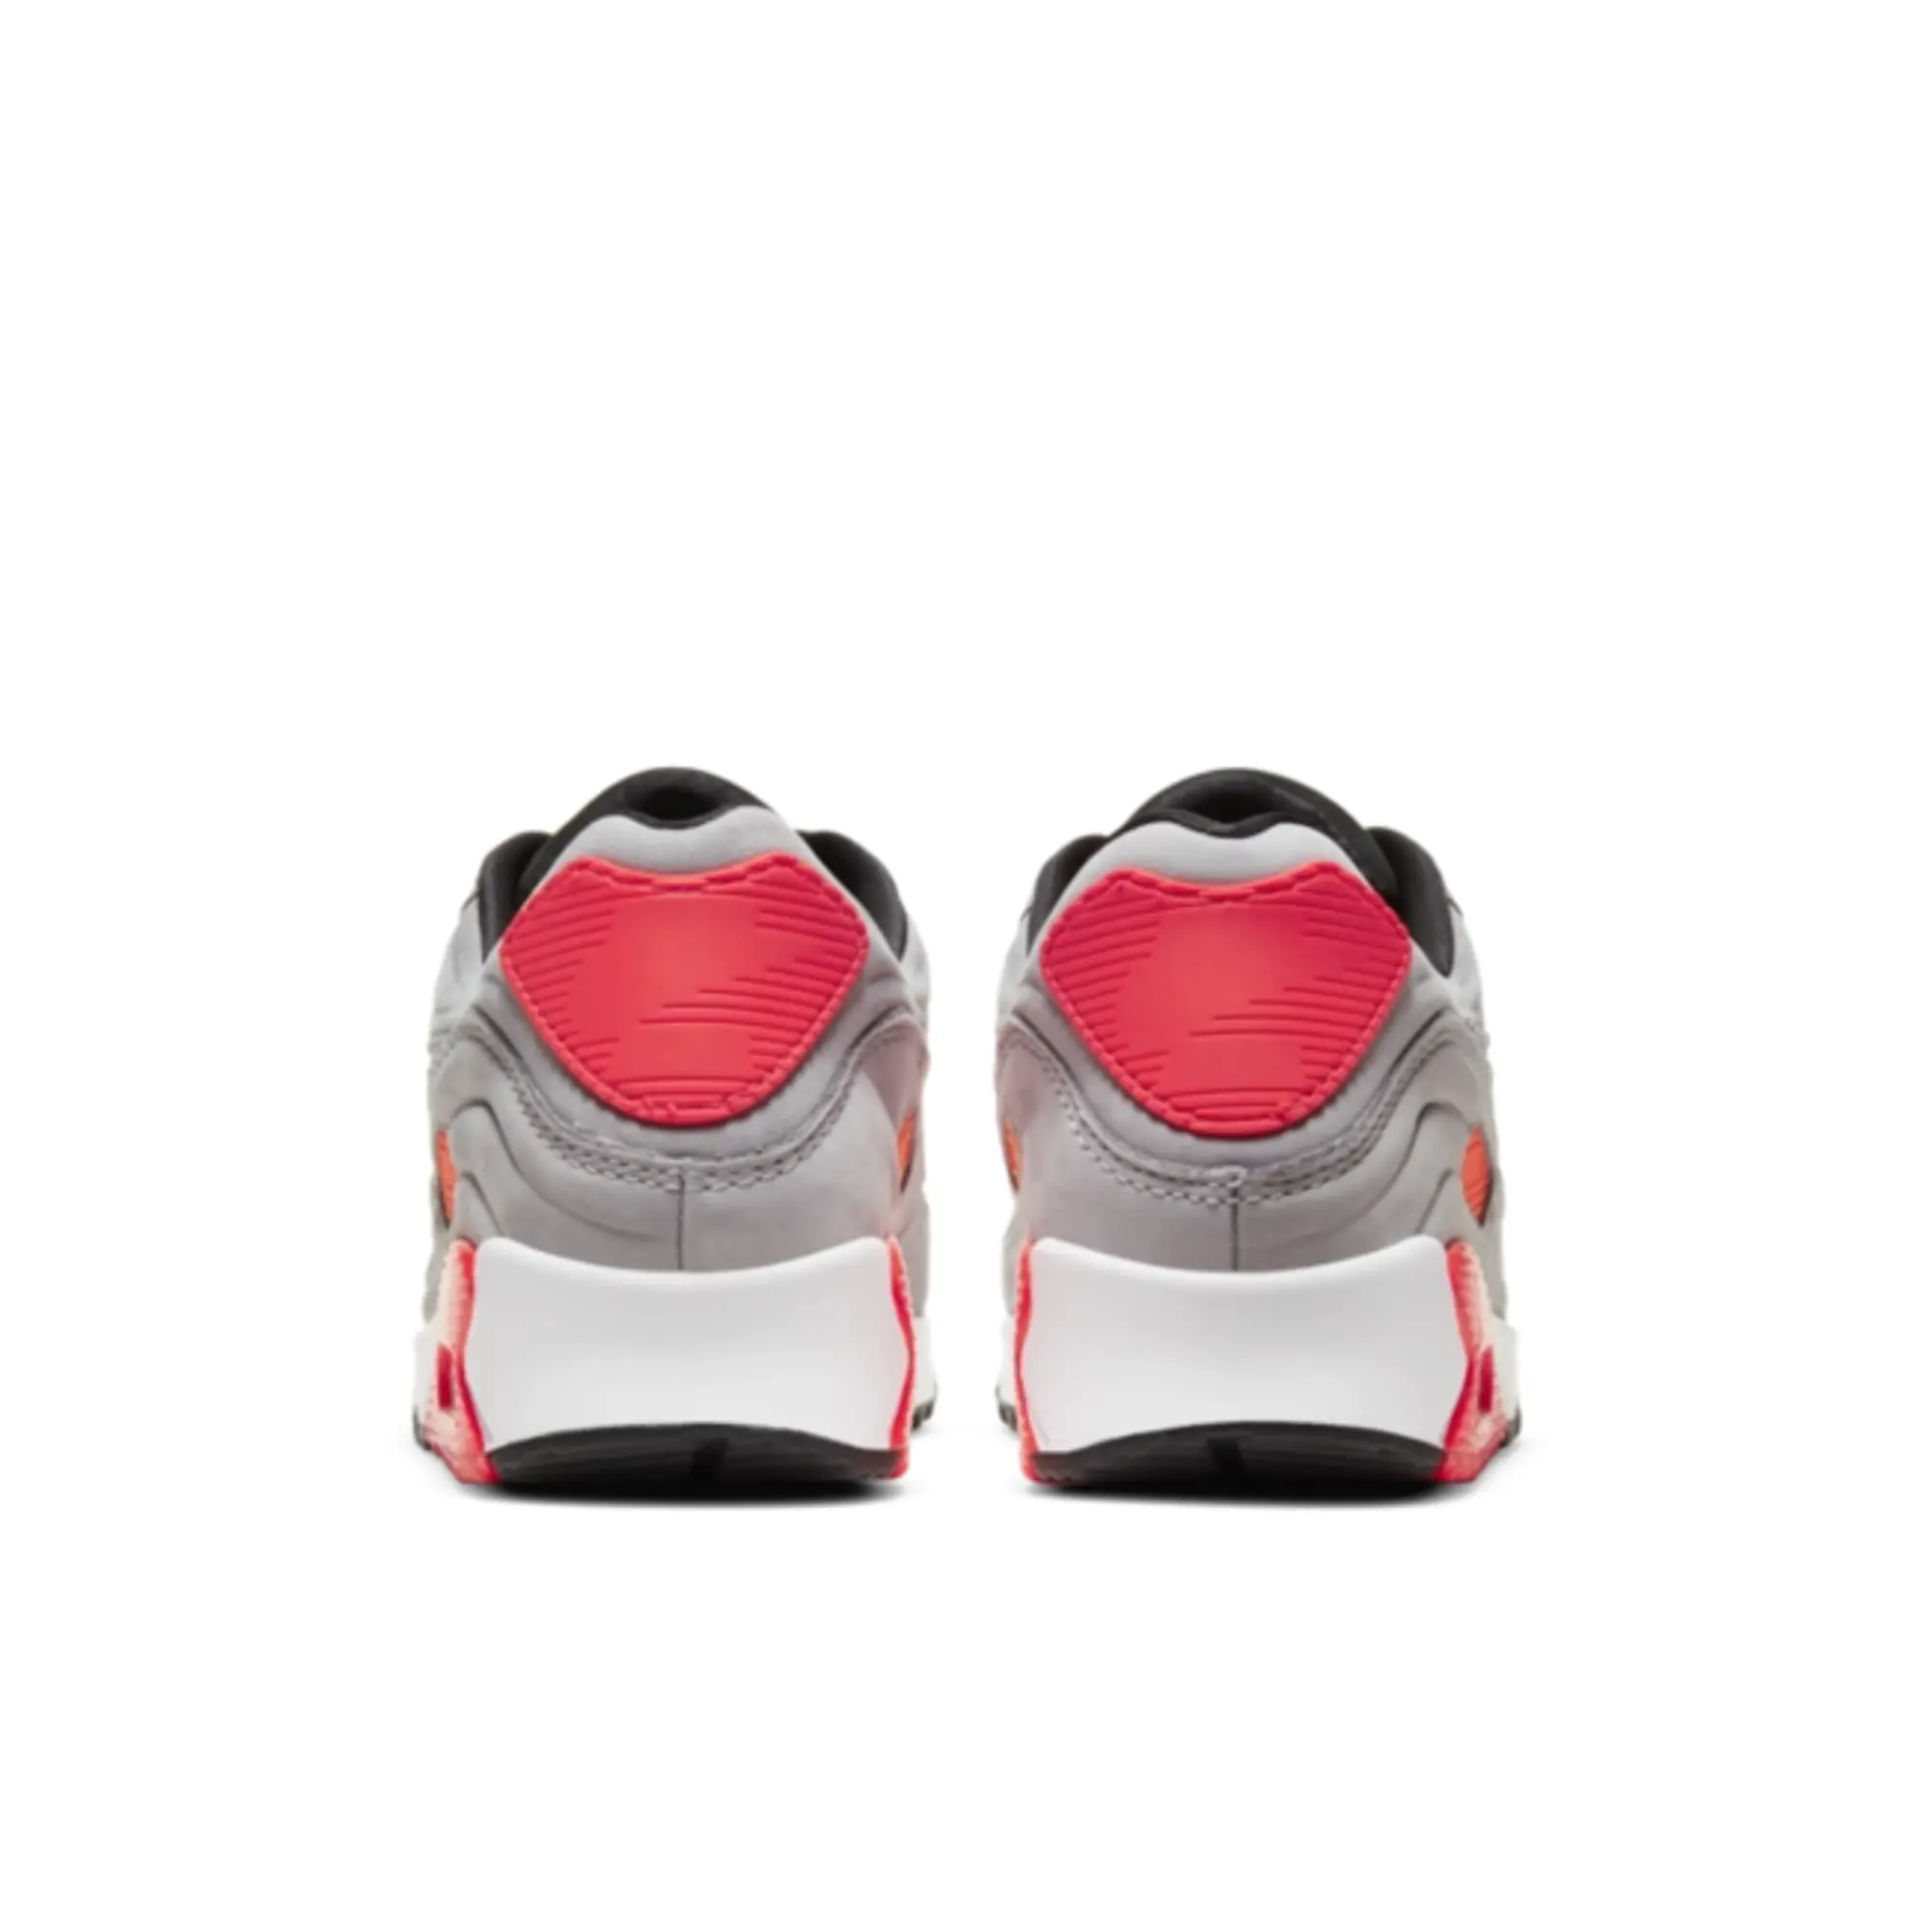 Nike Air Max 90 QS Lux Night Silver Bright Crimson